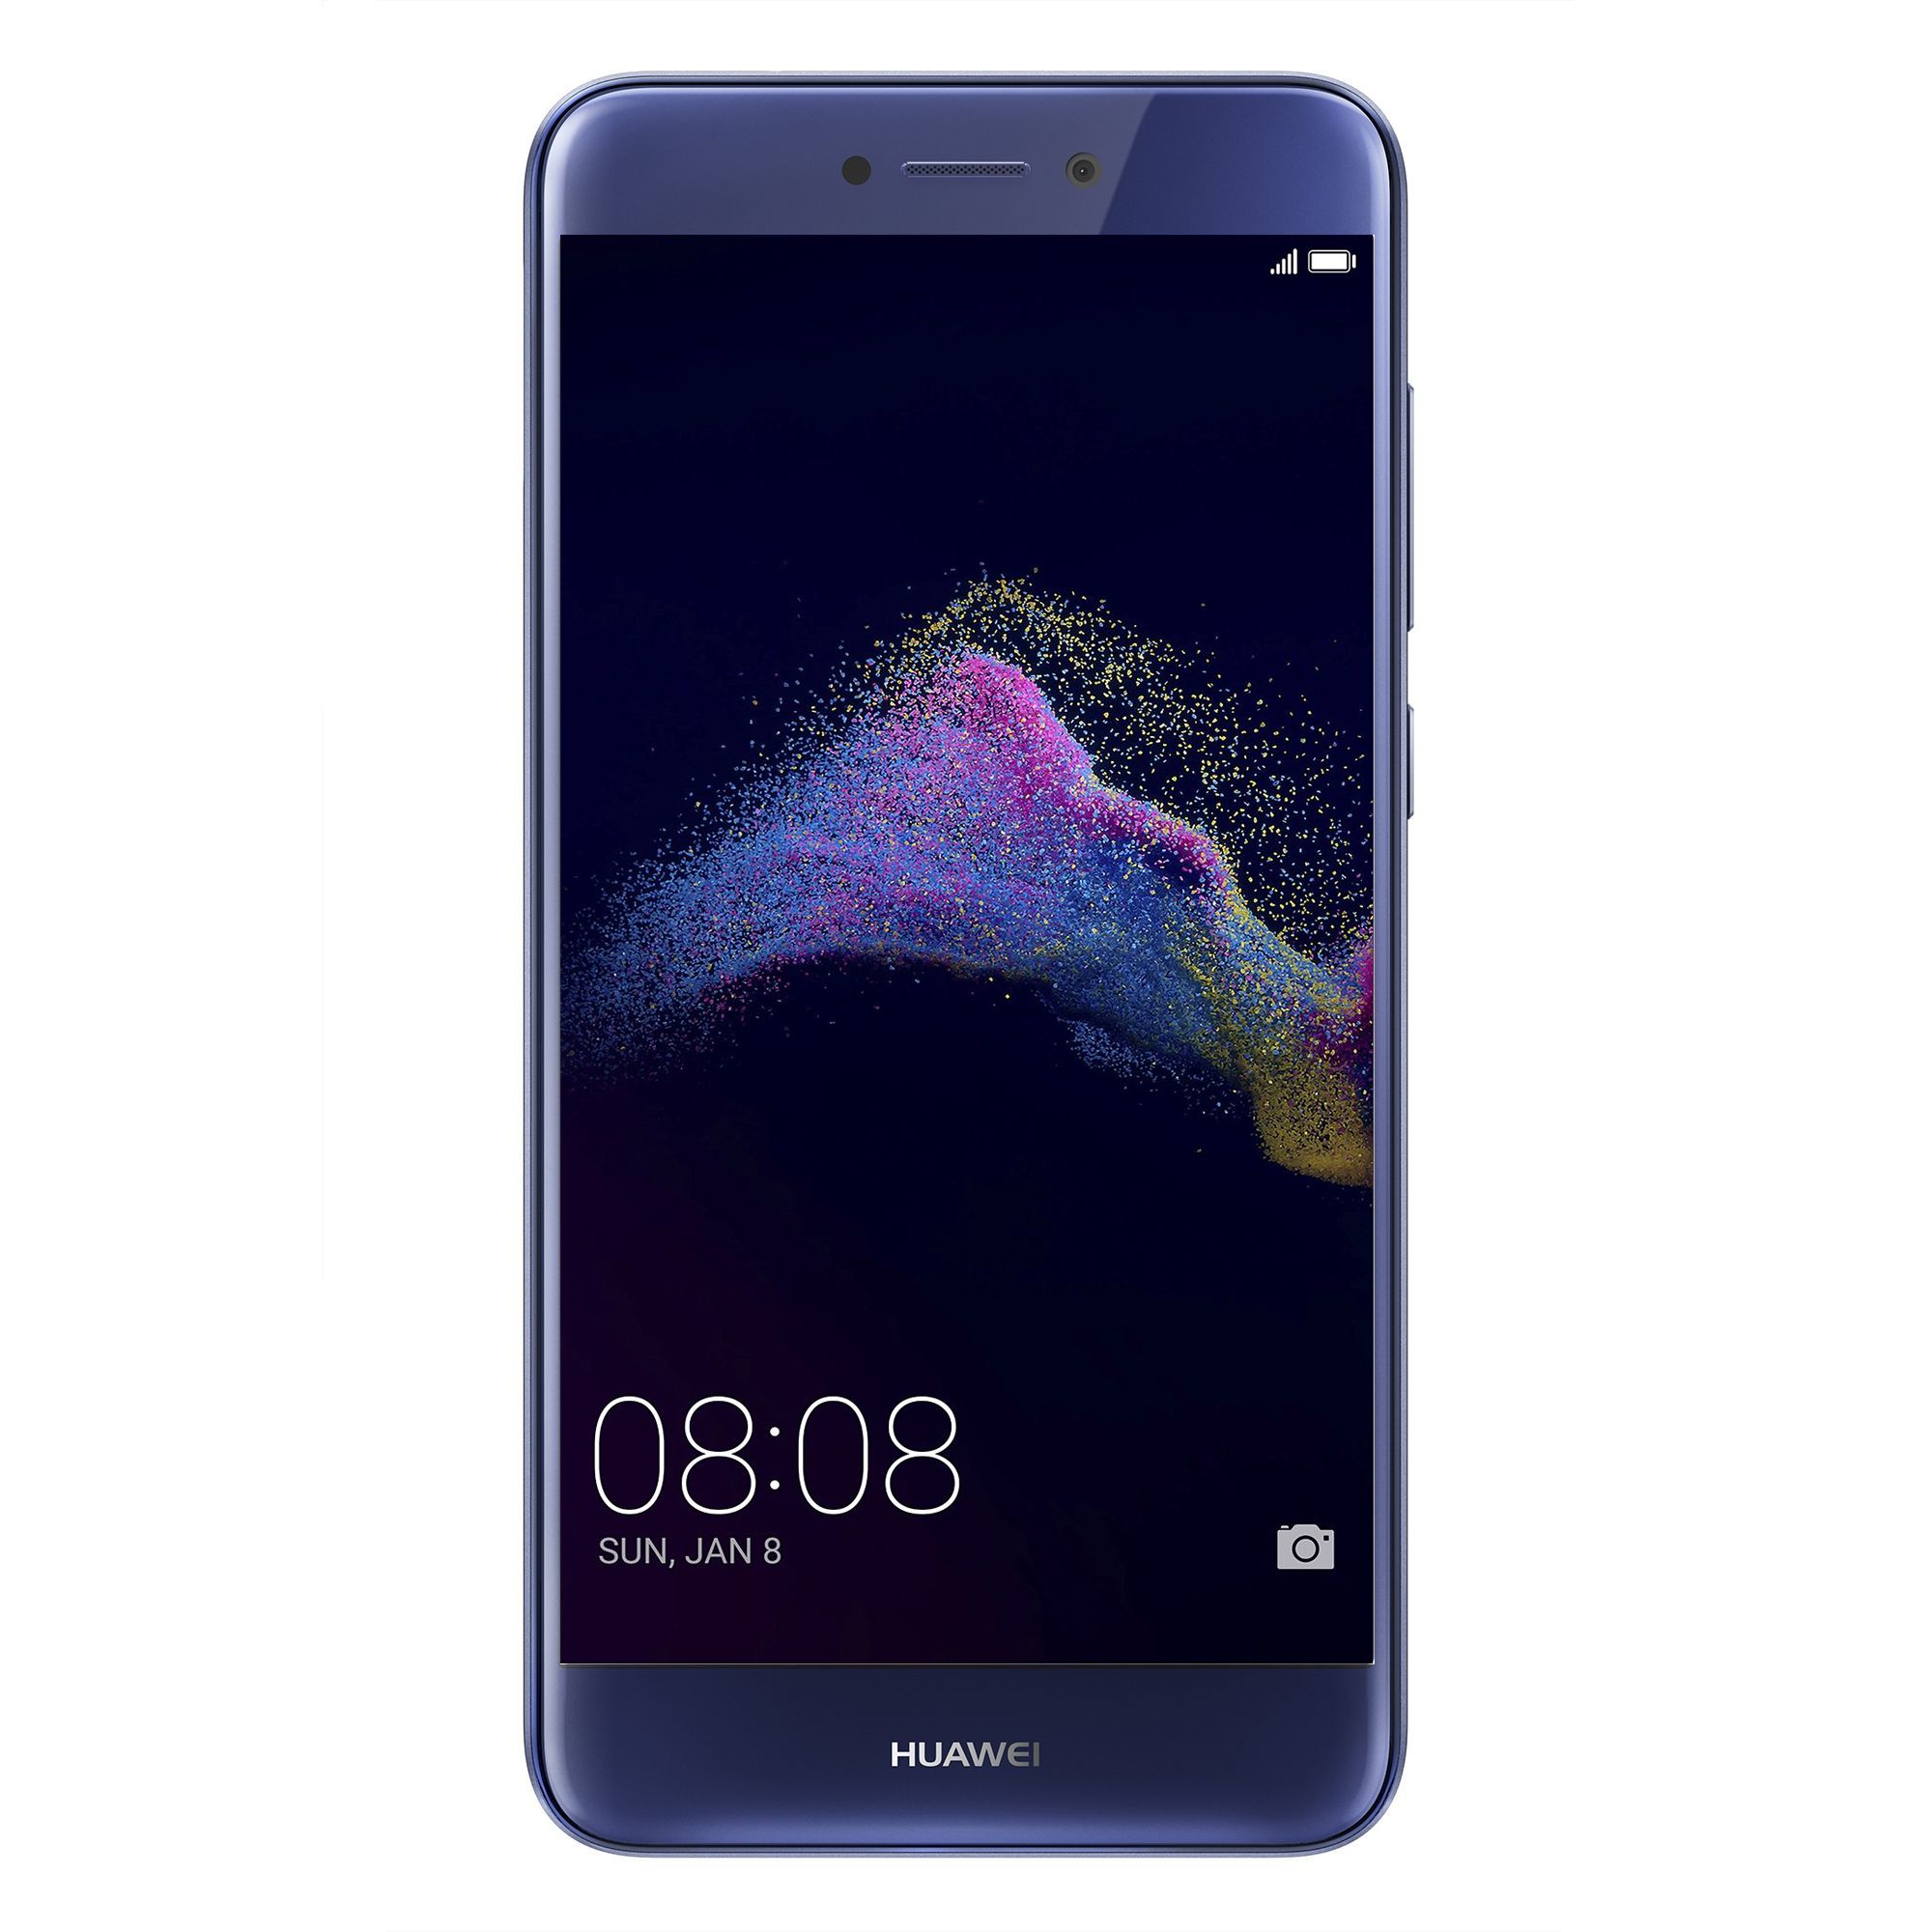 Telefon Mobil Huawei P9 Lite 2017 16GB Flash 3GB RAM Dual SIM 4G Blue title=Telefon Mobil Huawei P9 Lite 2017 16GB Flash 3GB RAM Dual SIM 4G Blue